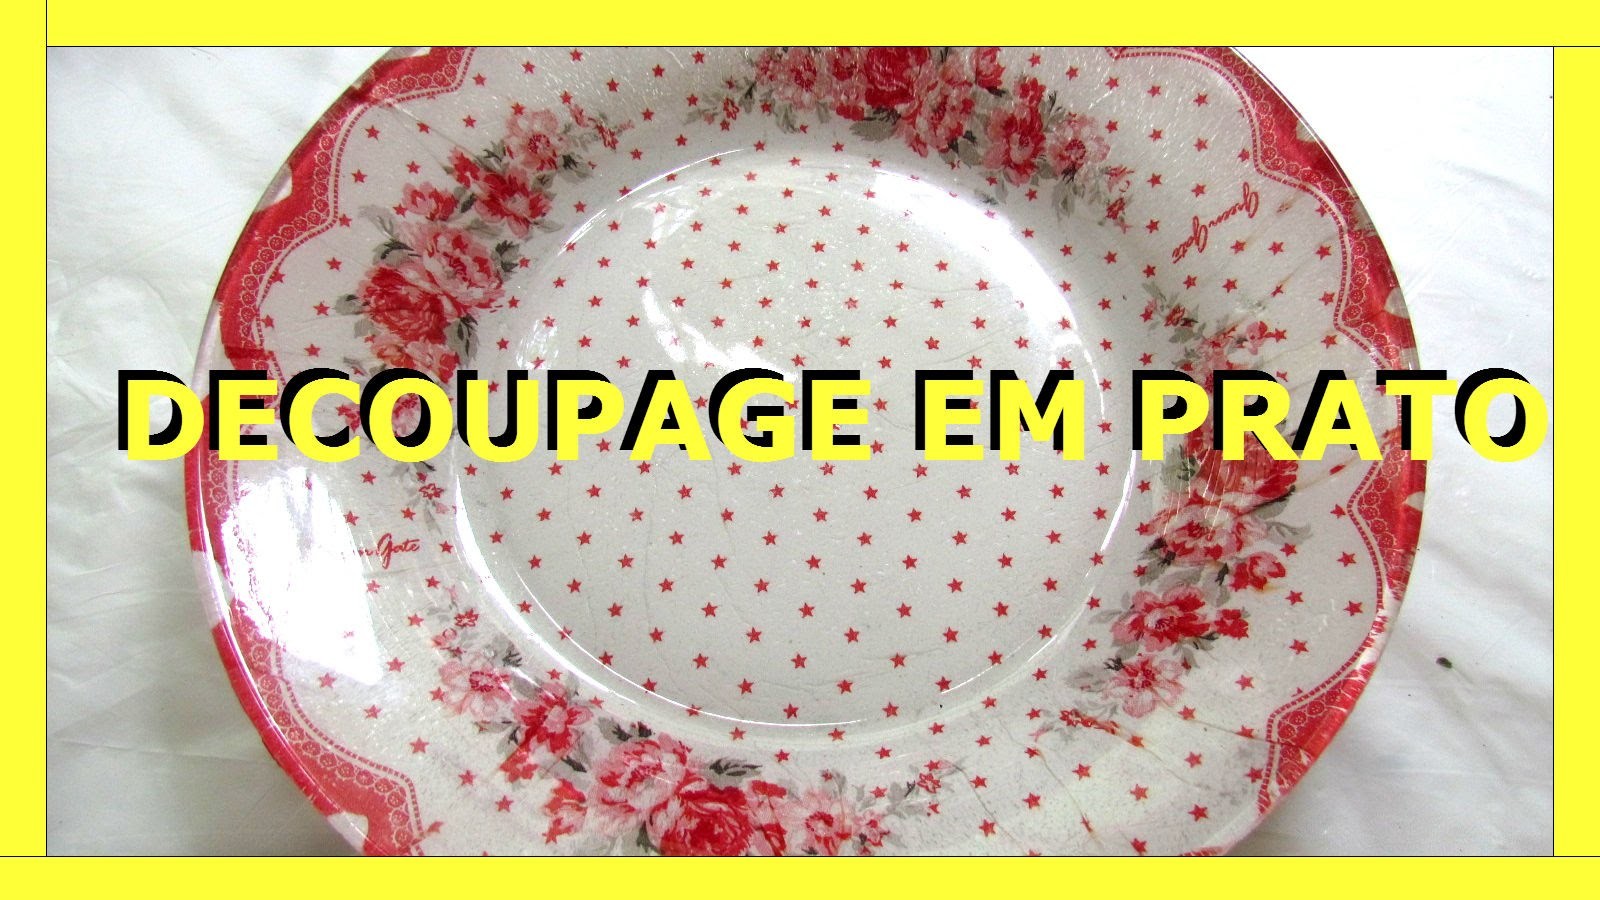 DECOUPAGE EM PRATO - 1 - Nane Mendes - Como decorar um prato com DECOUPAGE EM PRATO